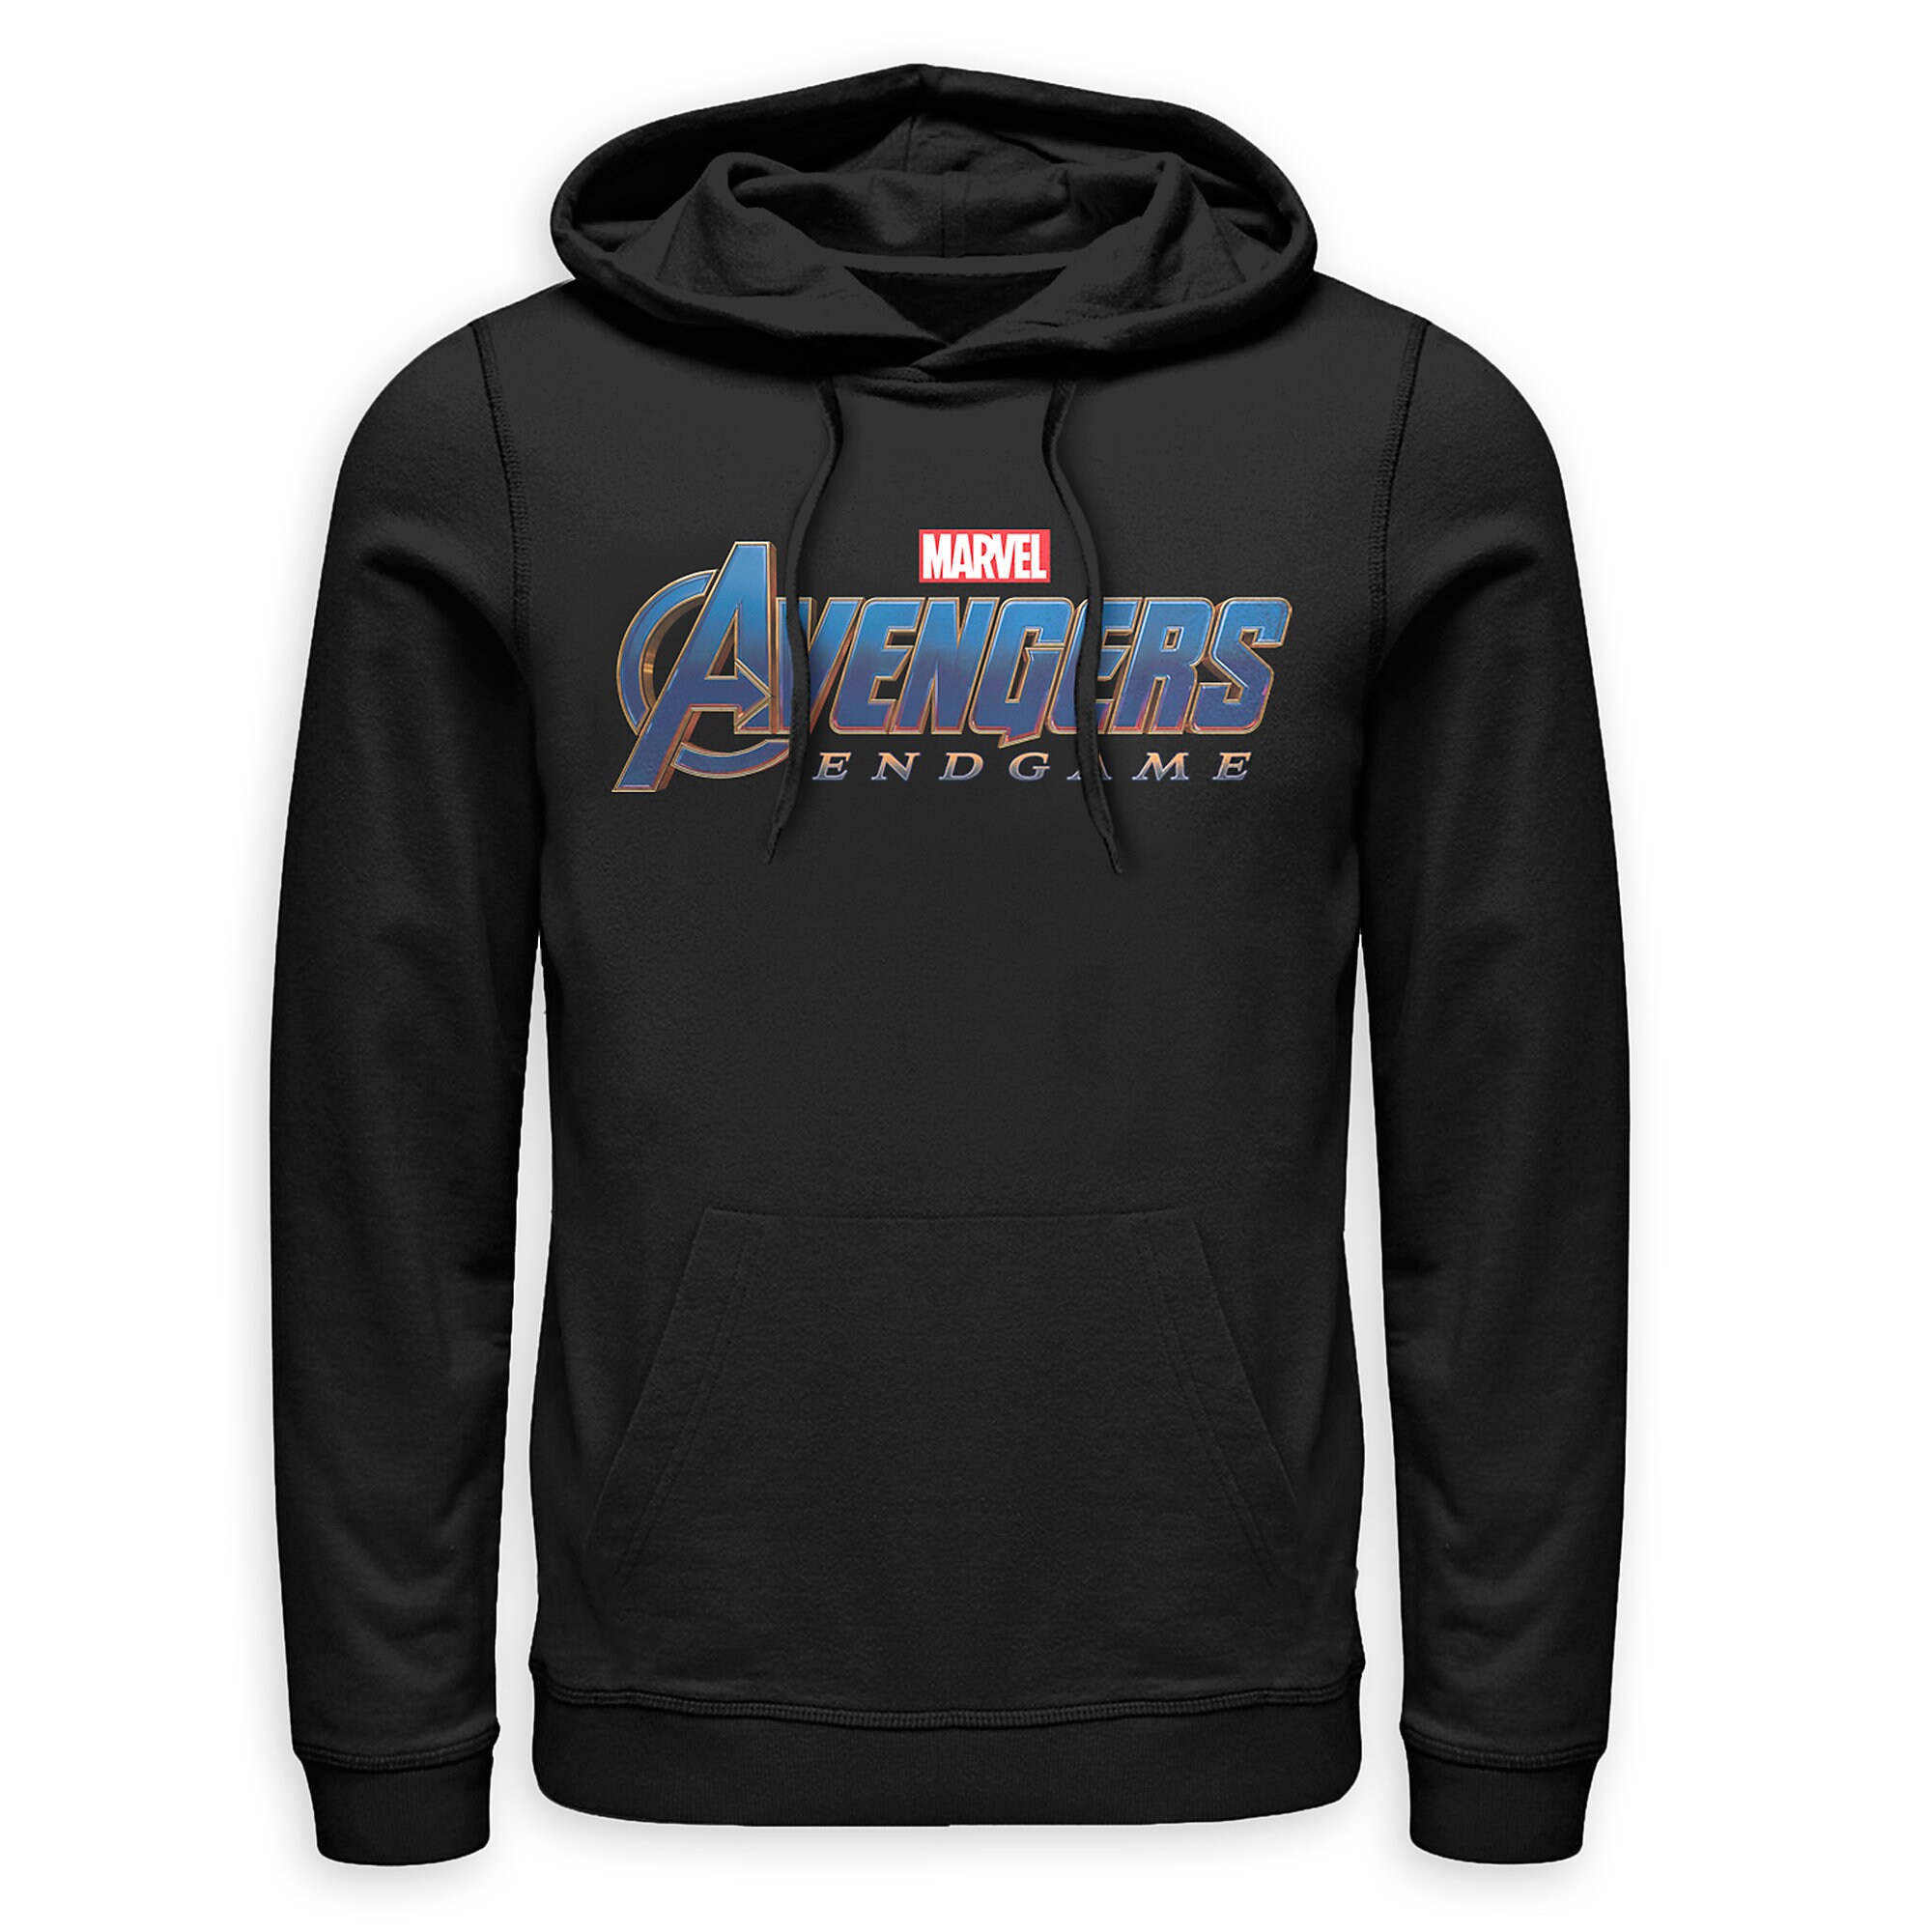 Marvel's Avengers: Endgame Logo Hoodie for Men